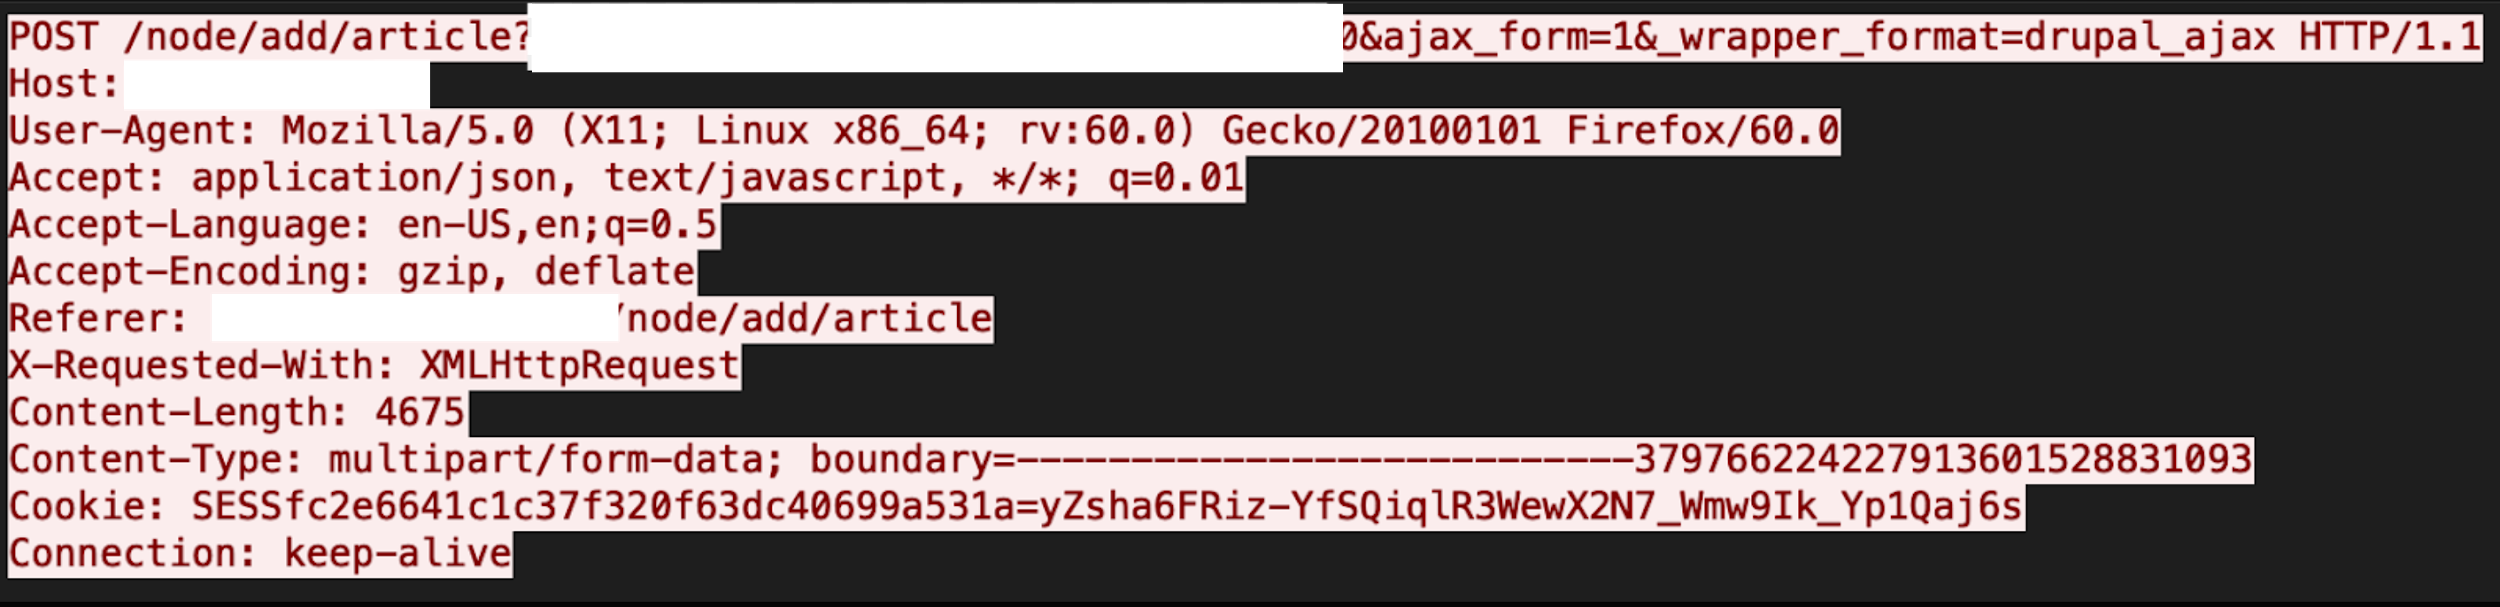 Drupalの二重拡張子の脆弱性が悪用された場合の結果のコードビューを示す画像